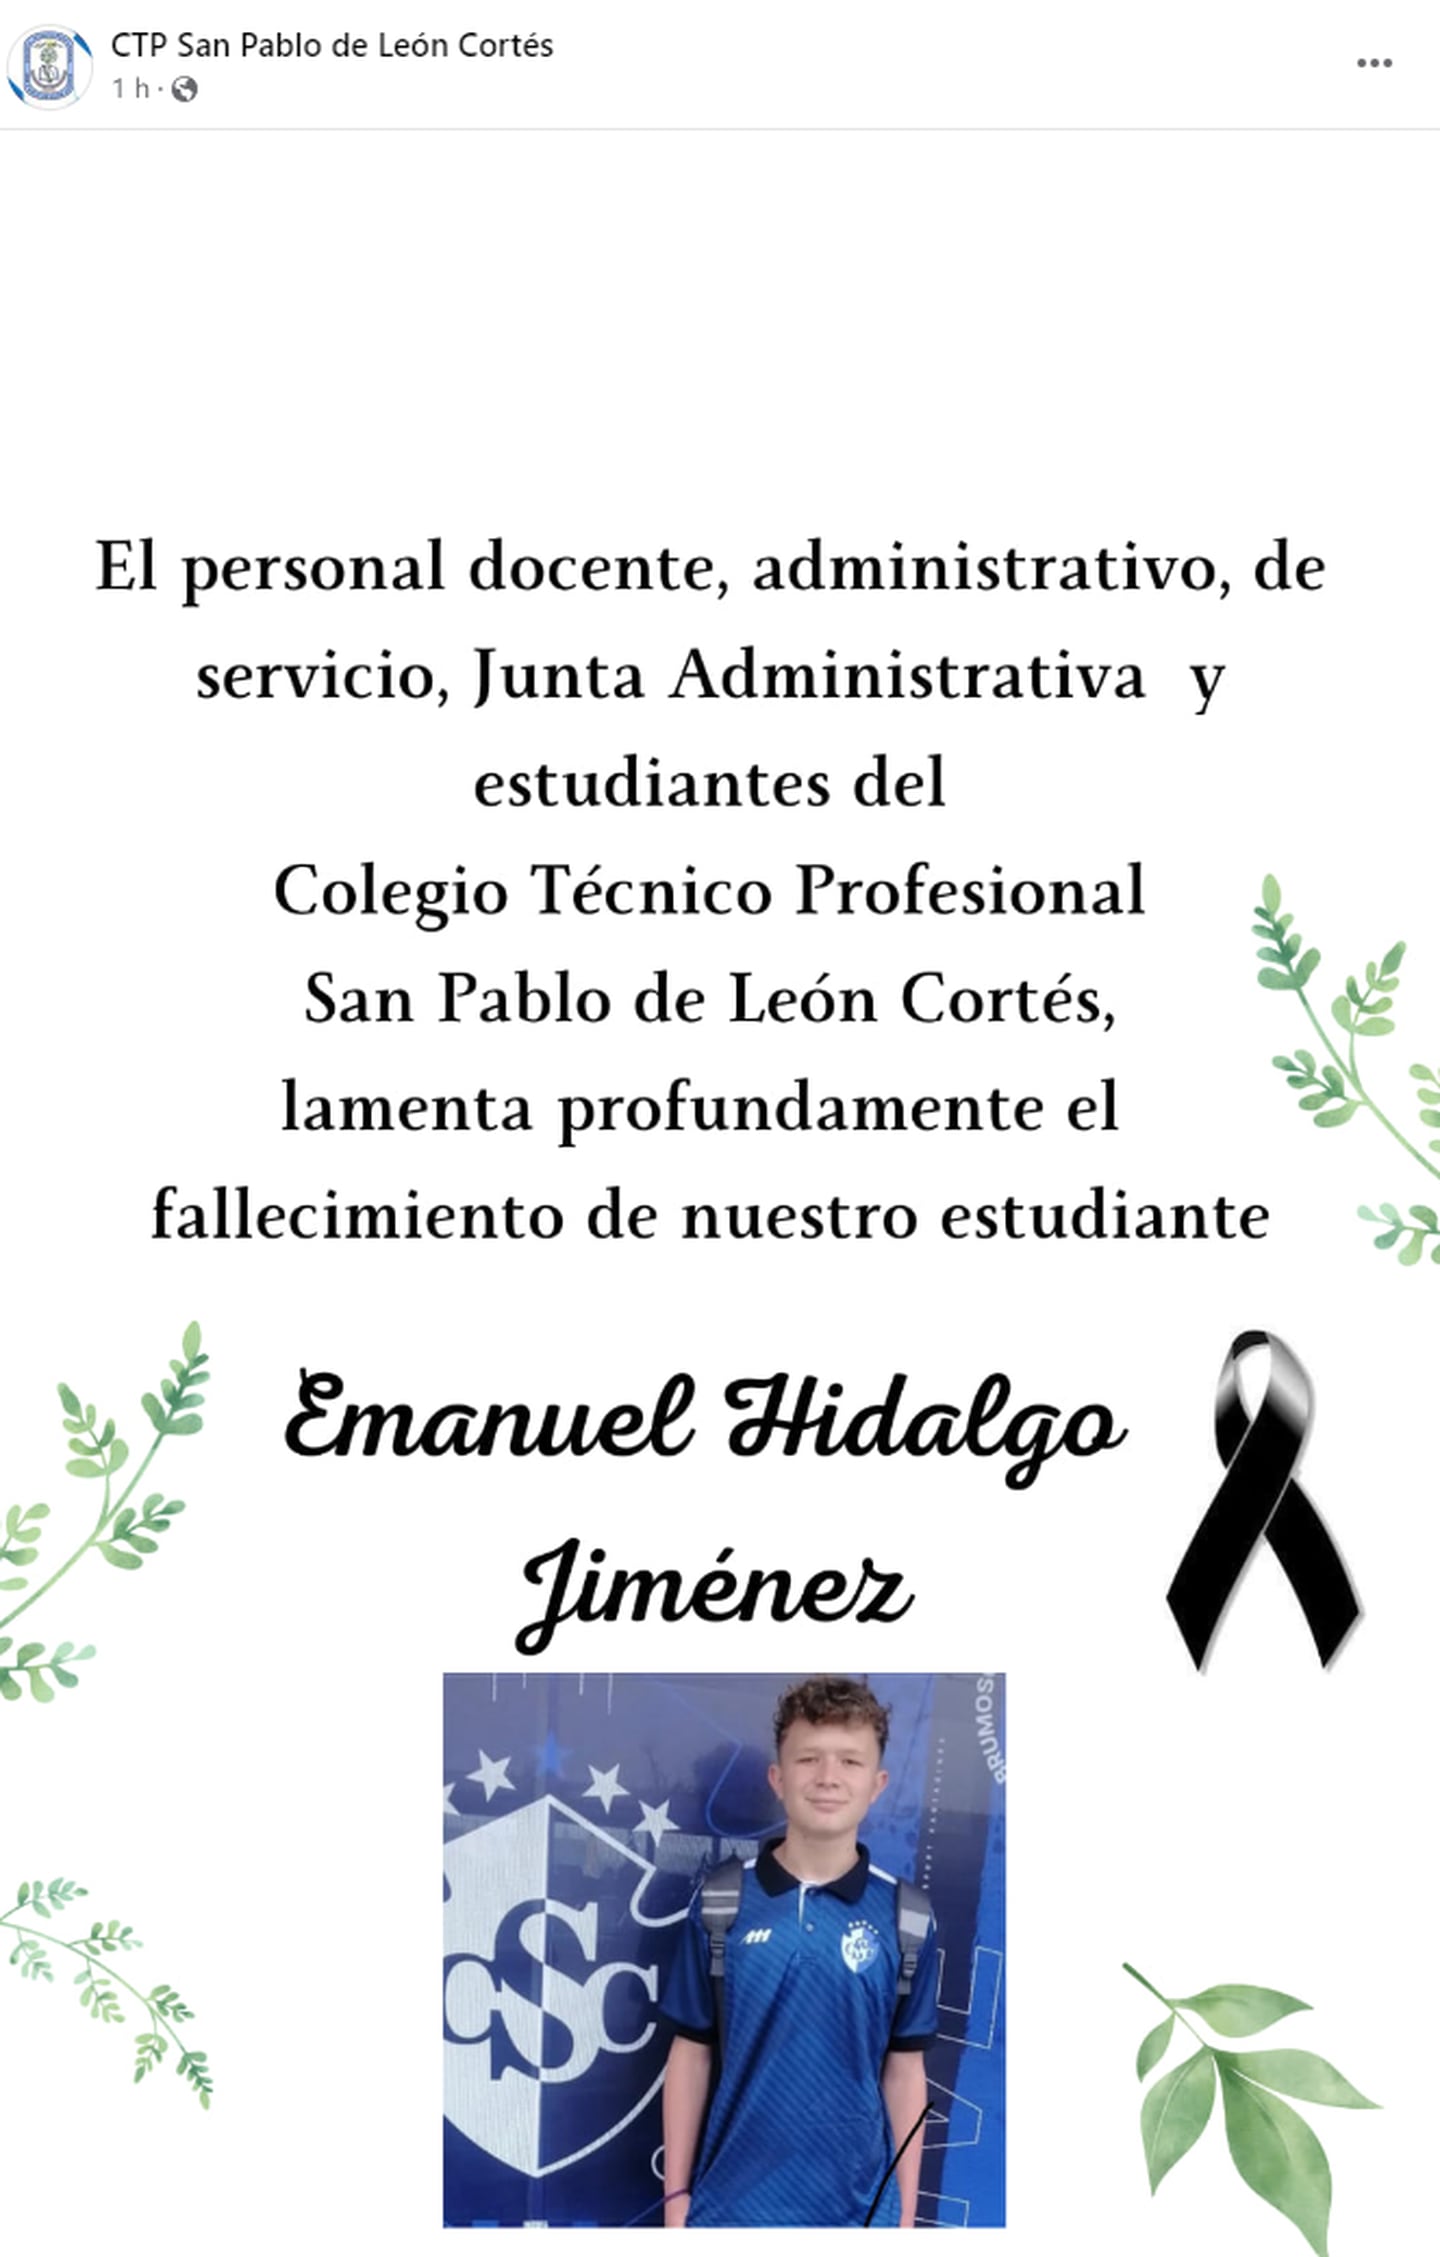 Colegio Técnico Profesional de San Pablo de León Cortés publica esquela por fallecimiento de alumno. Emanuel Hidalgo Jiménez